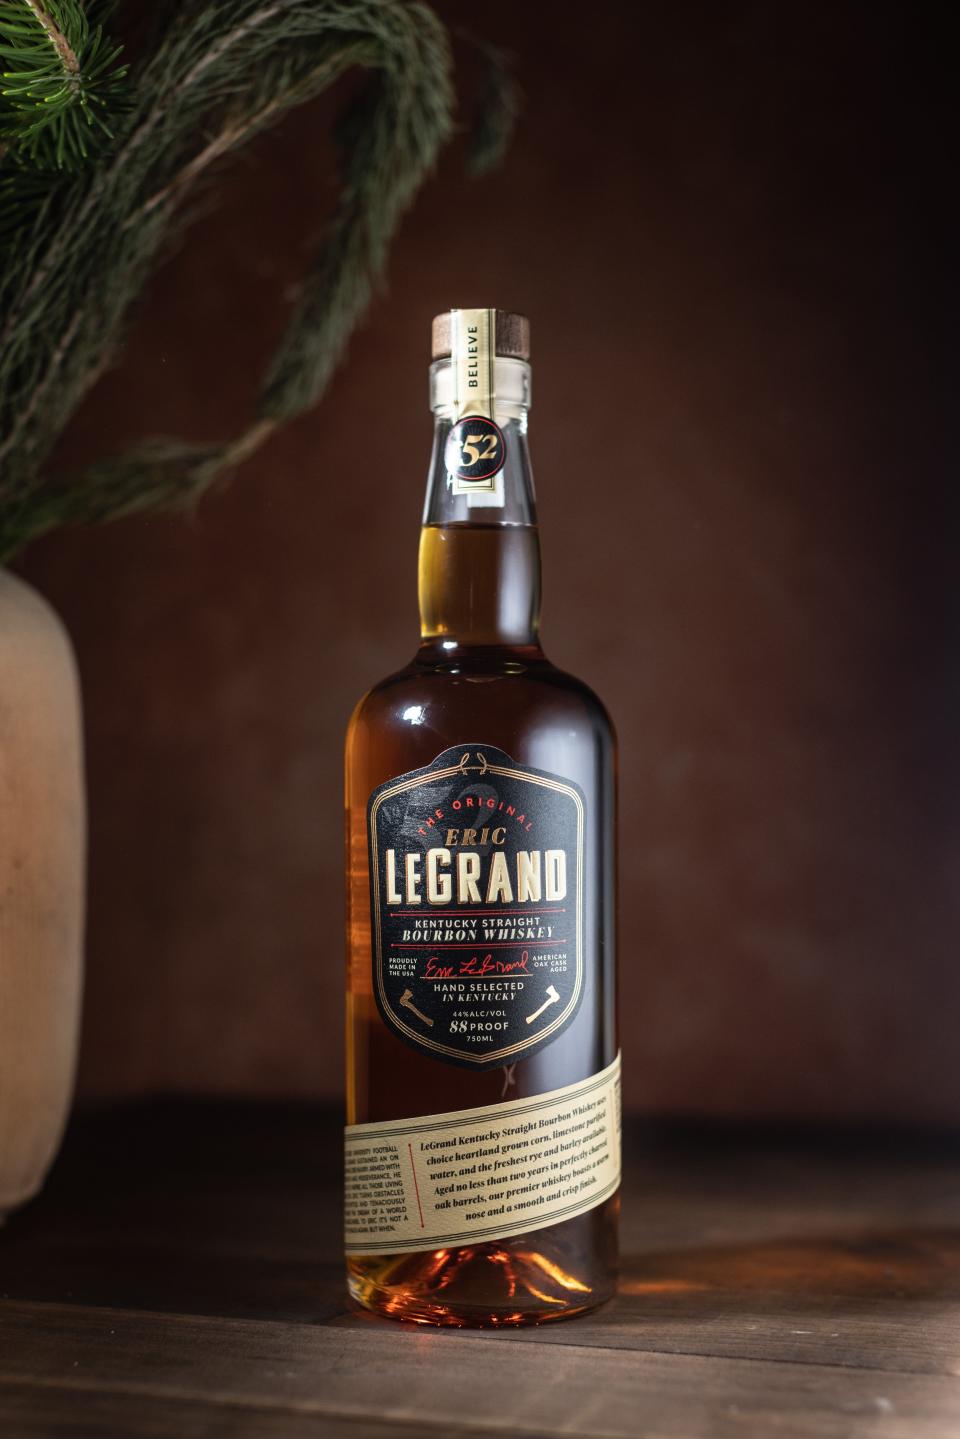 Eric LeGrand Bourbon is a Kentucky Straight Bourbon, distilled and bottled in Kentucky.